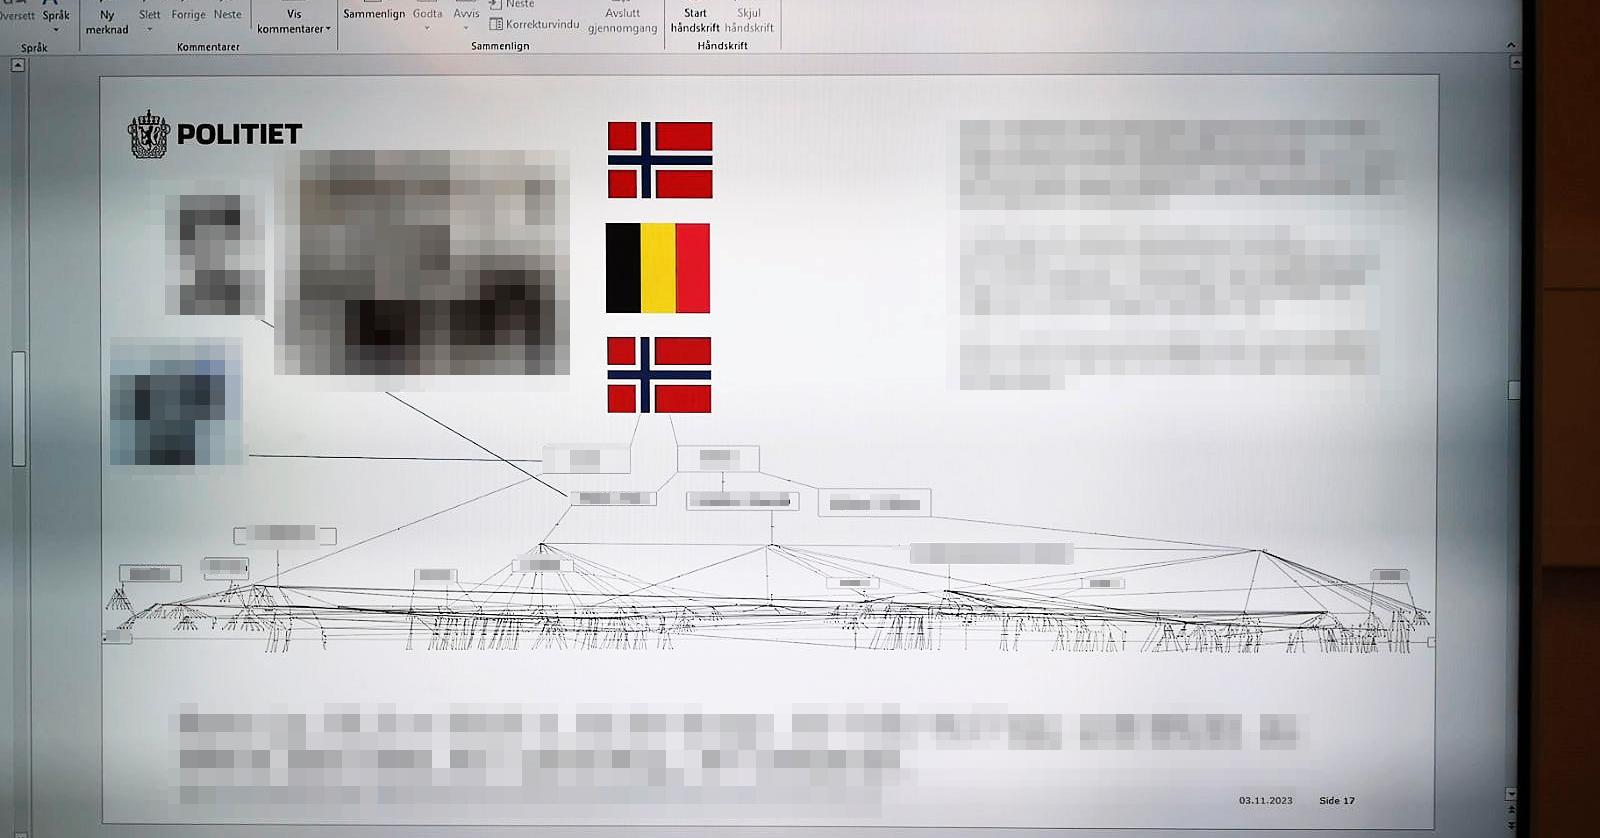 Dette lysbildet ble vist i et møte om kriminalitetsbekjempelse i det norske rom-miljøet på Politihøgskolen i november.